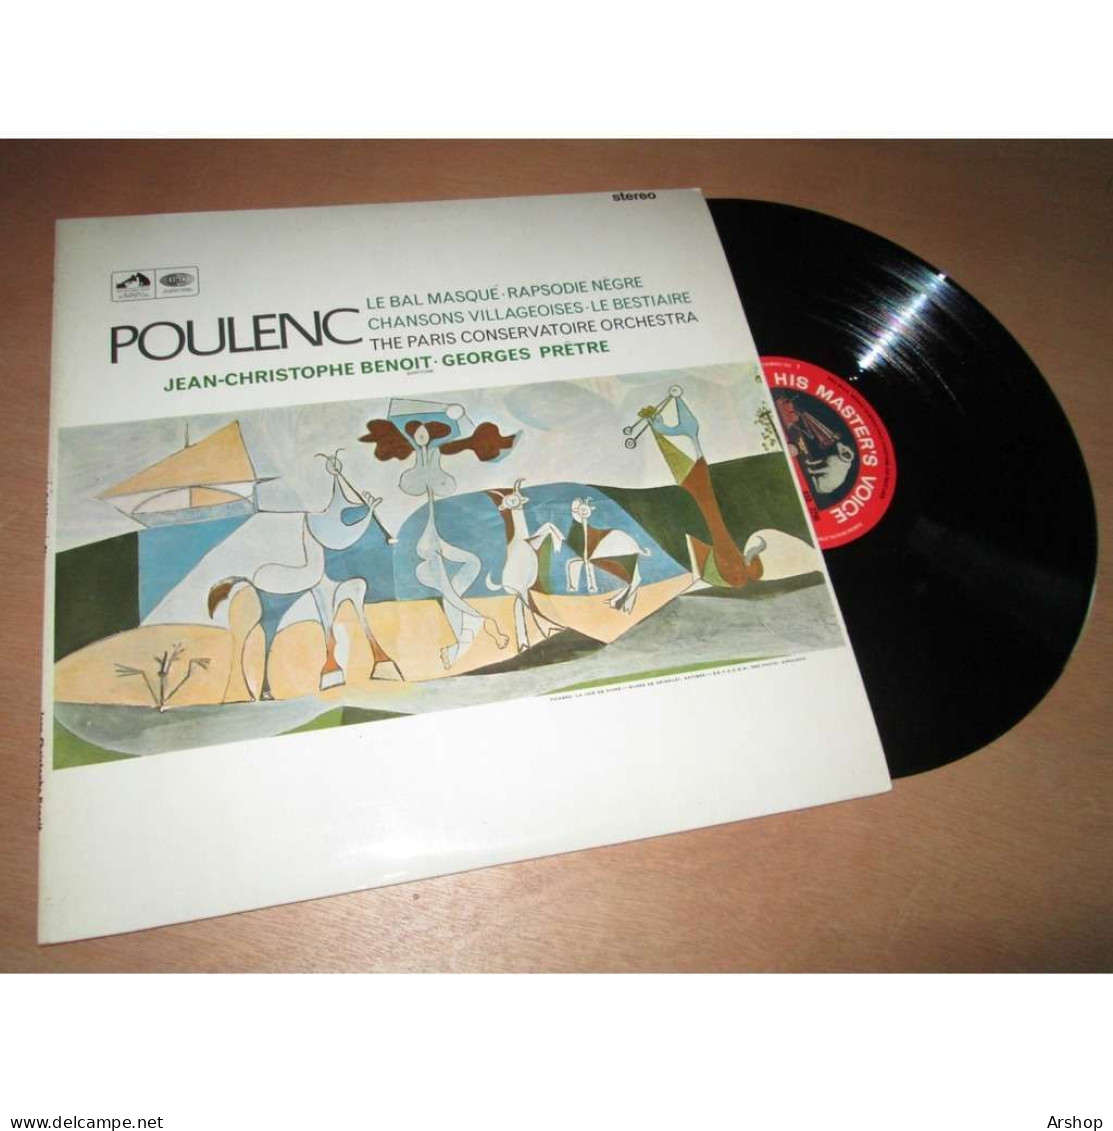 GEORGES PRETRE Le Bal Masqué - Rapsodie Negre - Le Bestiaire & POULENC - His Master Voice ASD 2296 UK Lp 1966 - Klassiekers